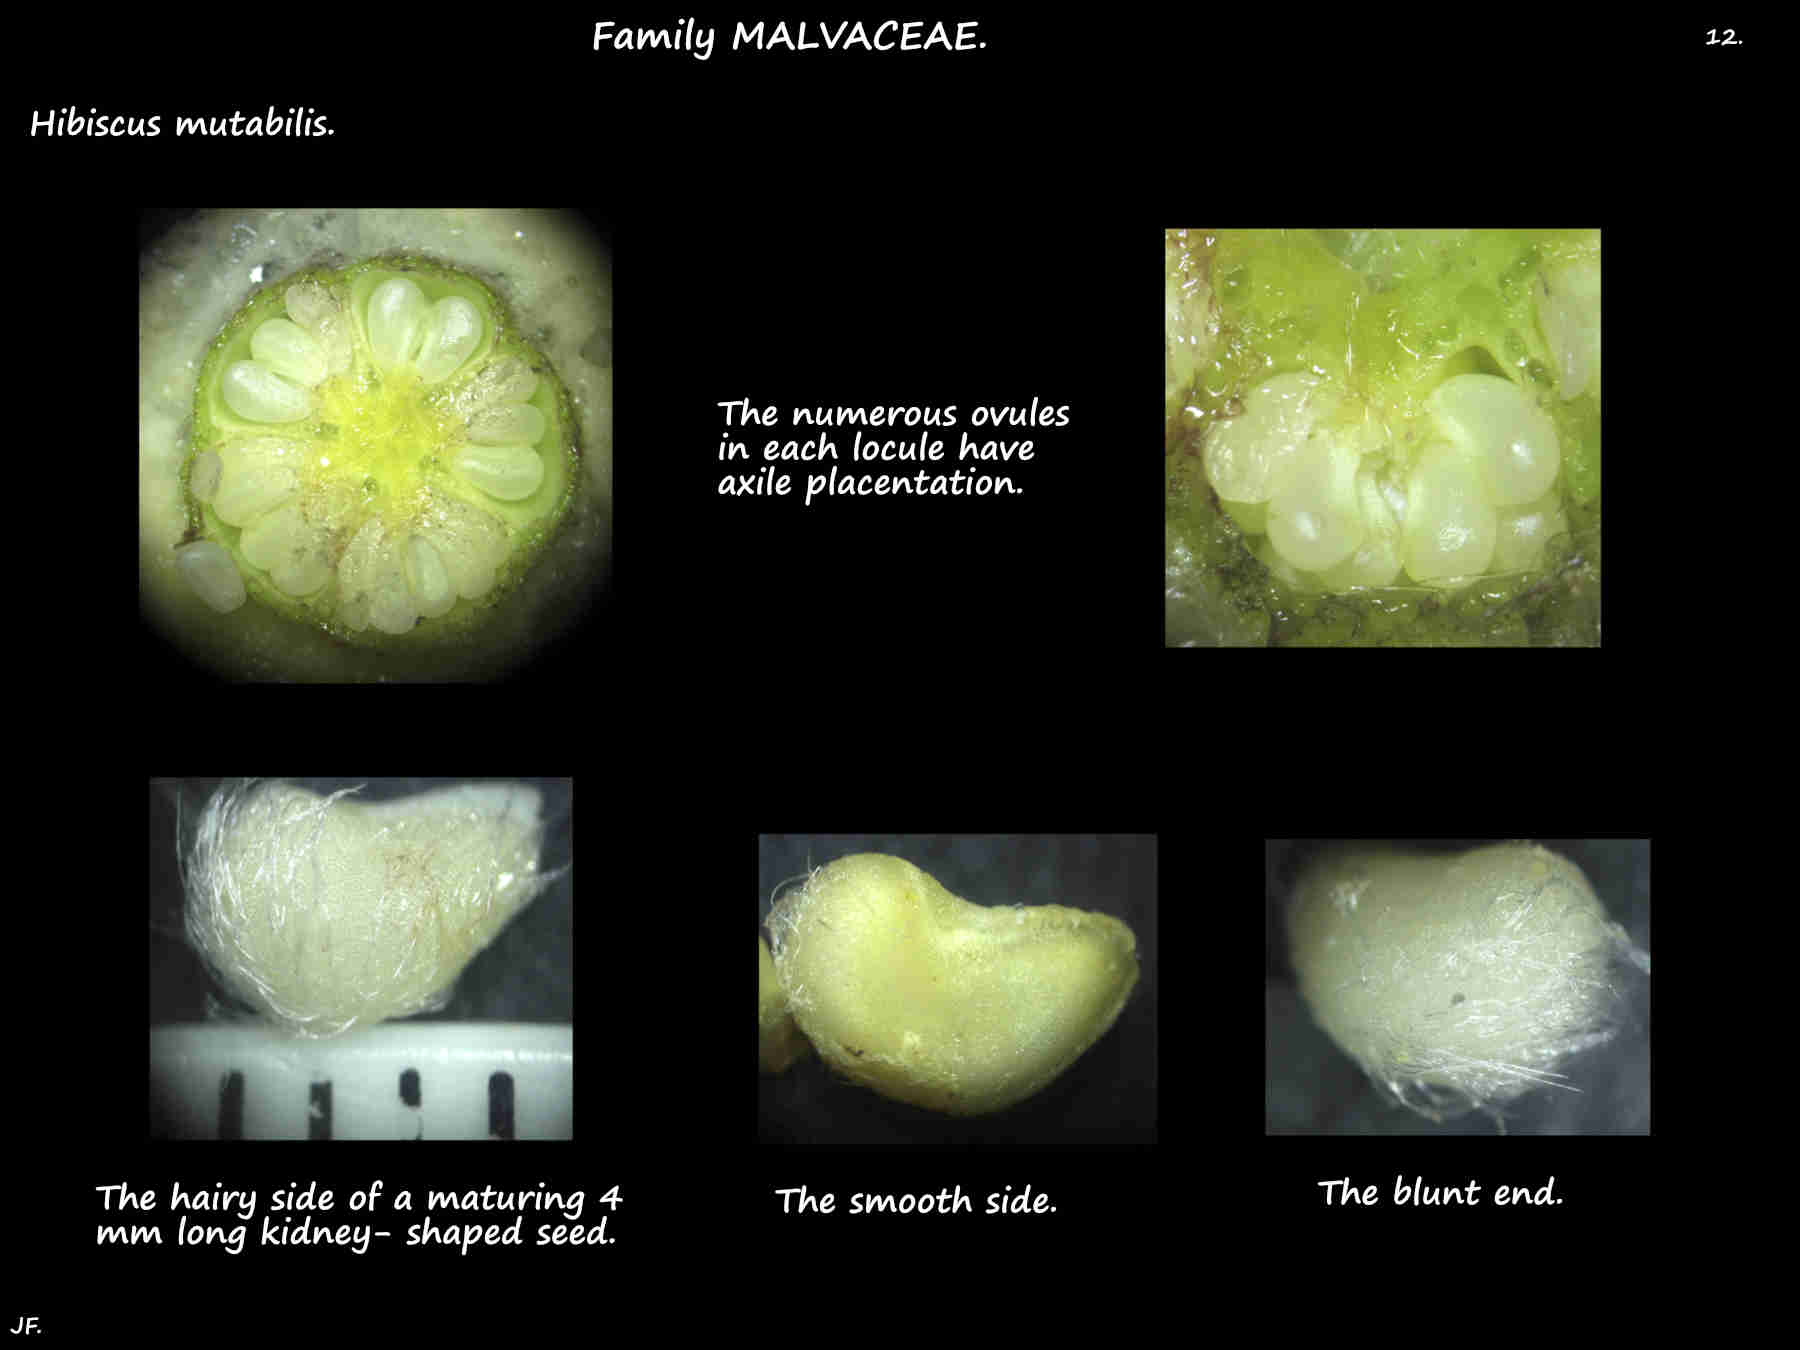 12 Maturing Hibiscus mutabilis ovules